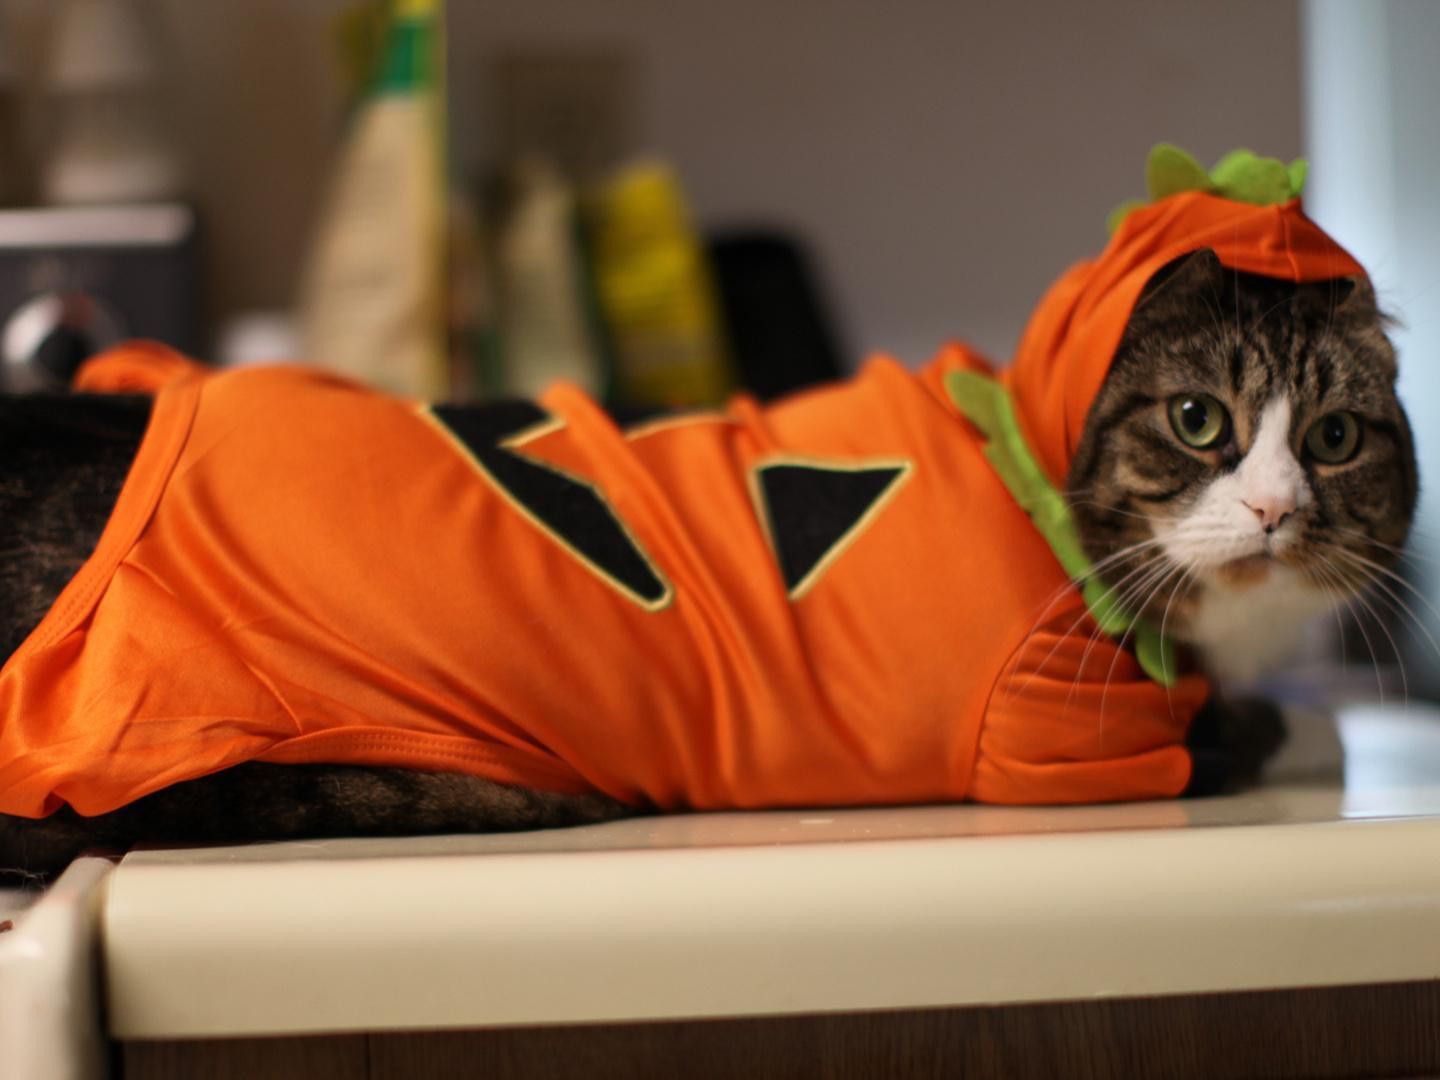 Kitty's Costume For Halloween HD desktop wallpaper, Widescreen, High Definition